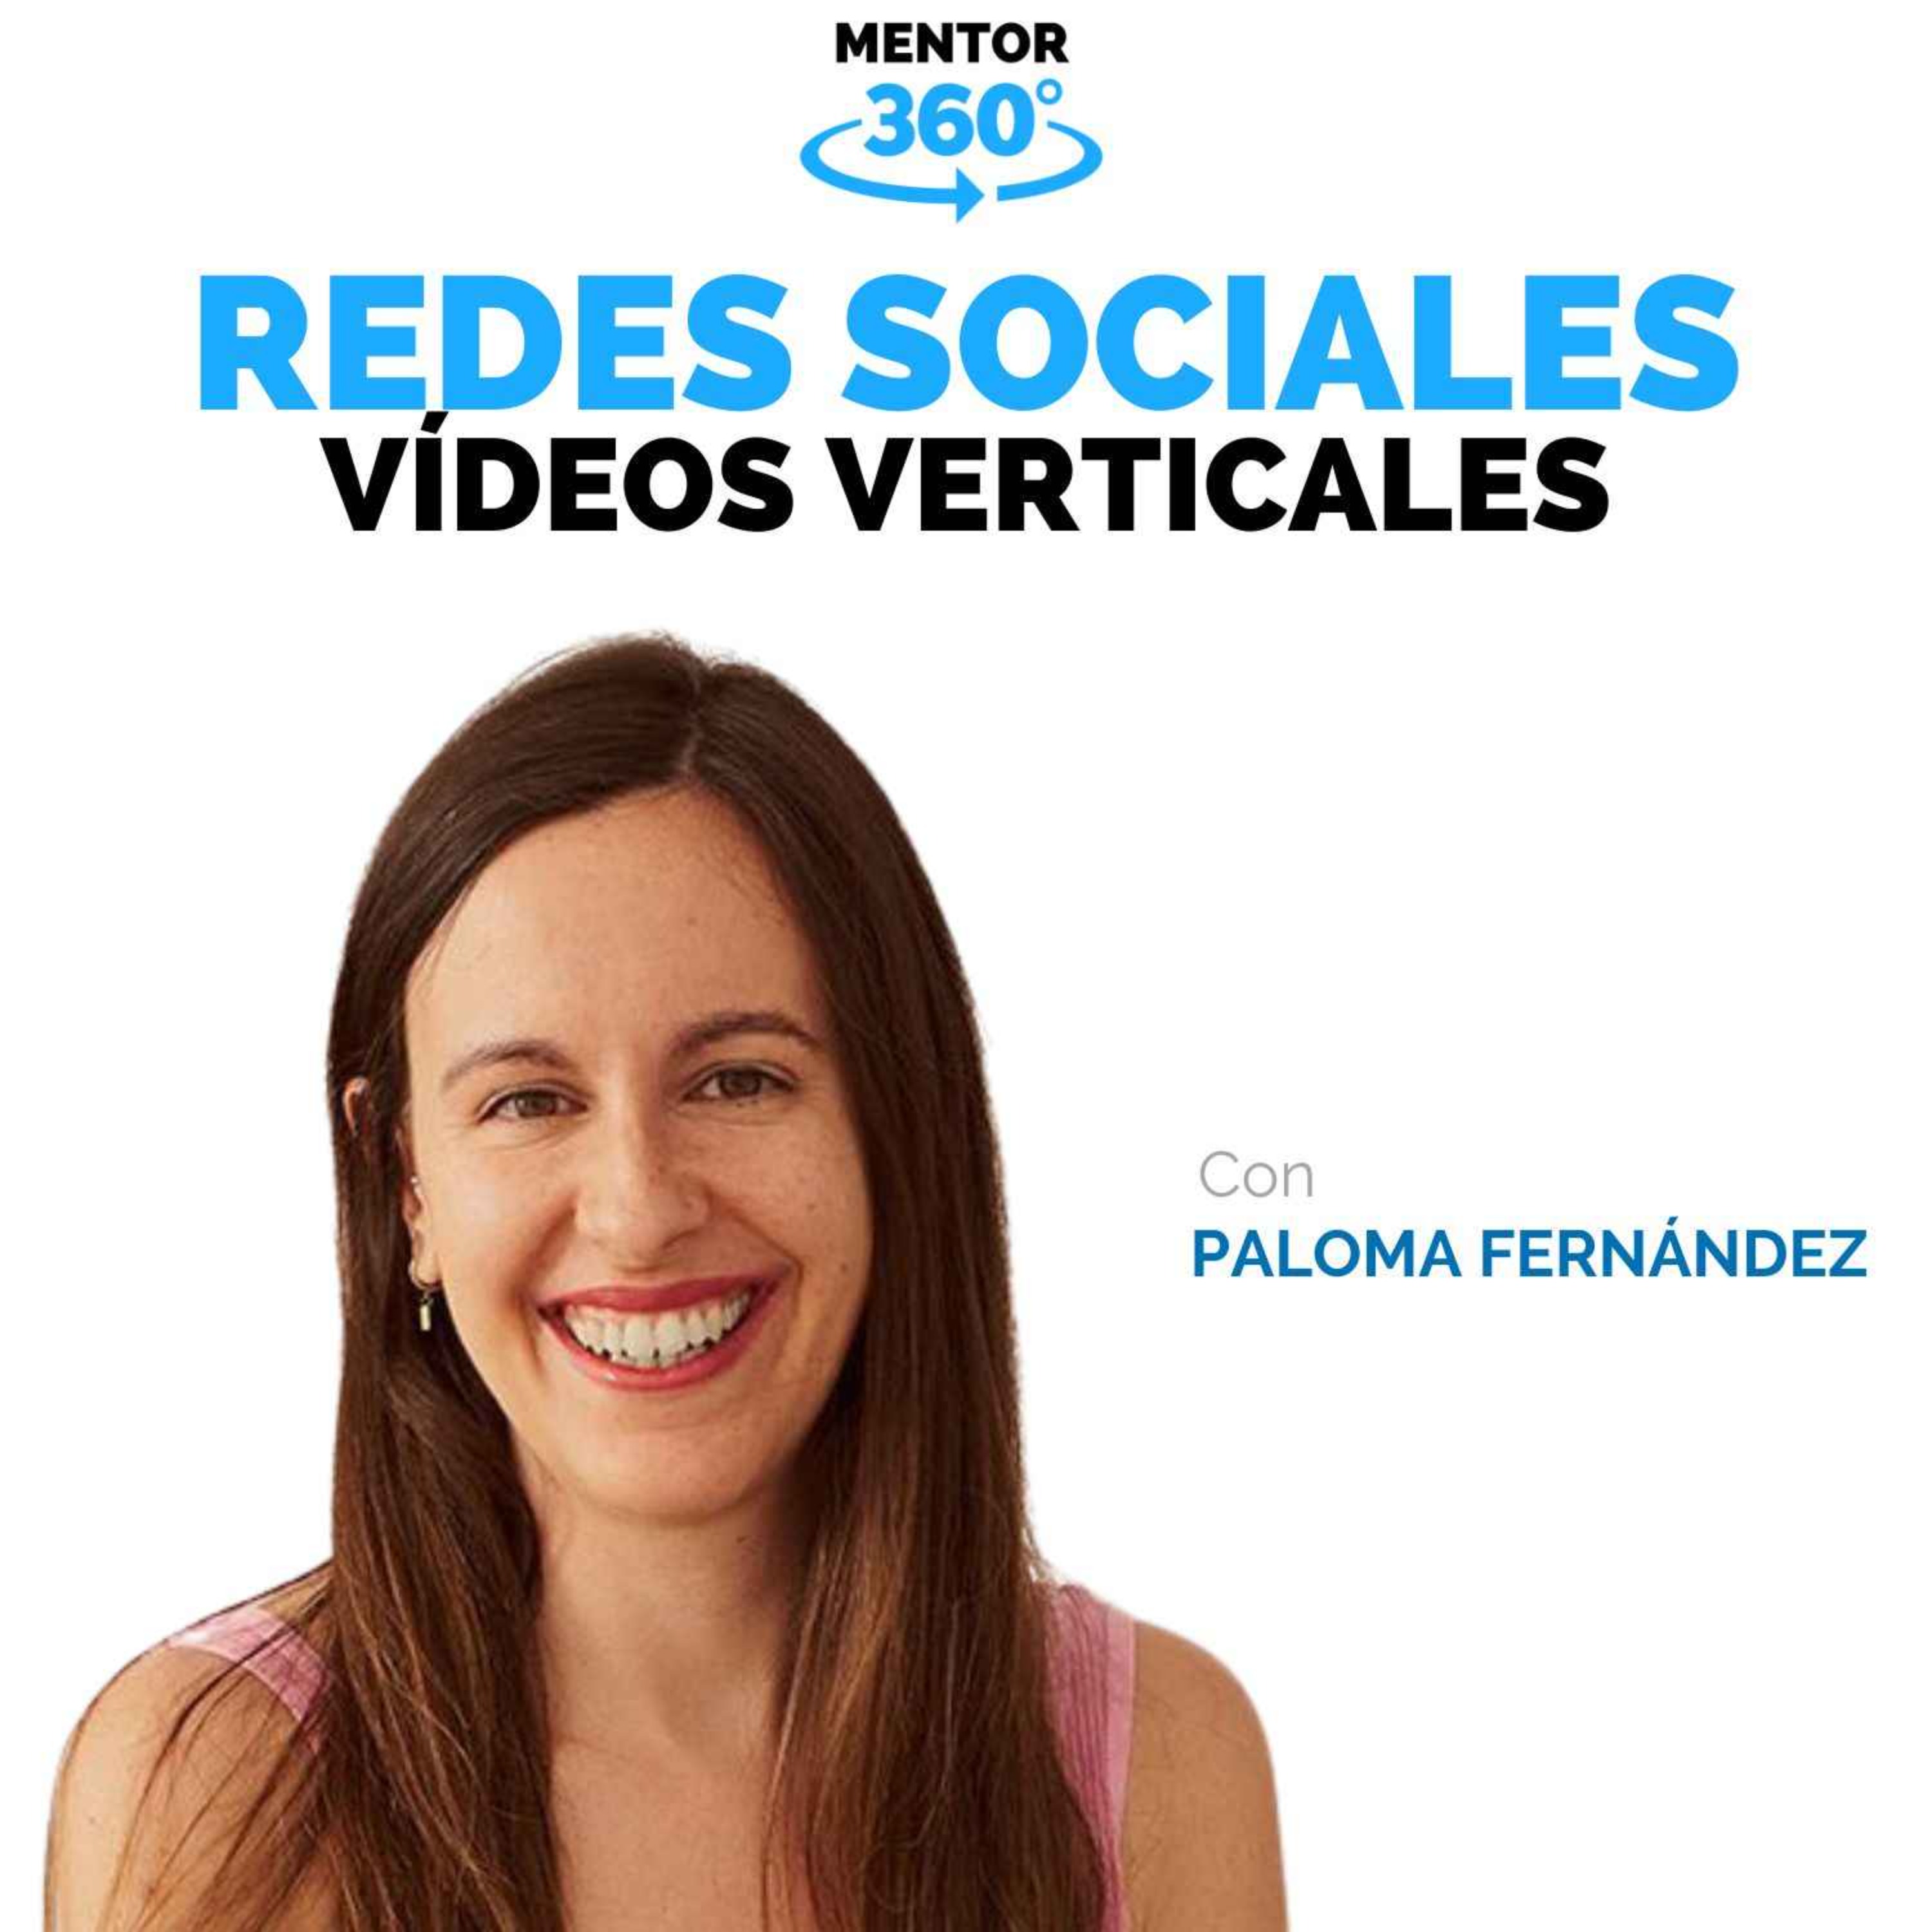 Personas Triunfando con Vídeos Verticales - Paloma Fernández - Redes Sociales - MENTOR360